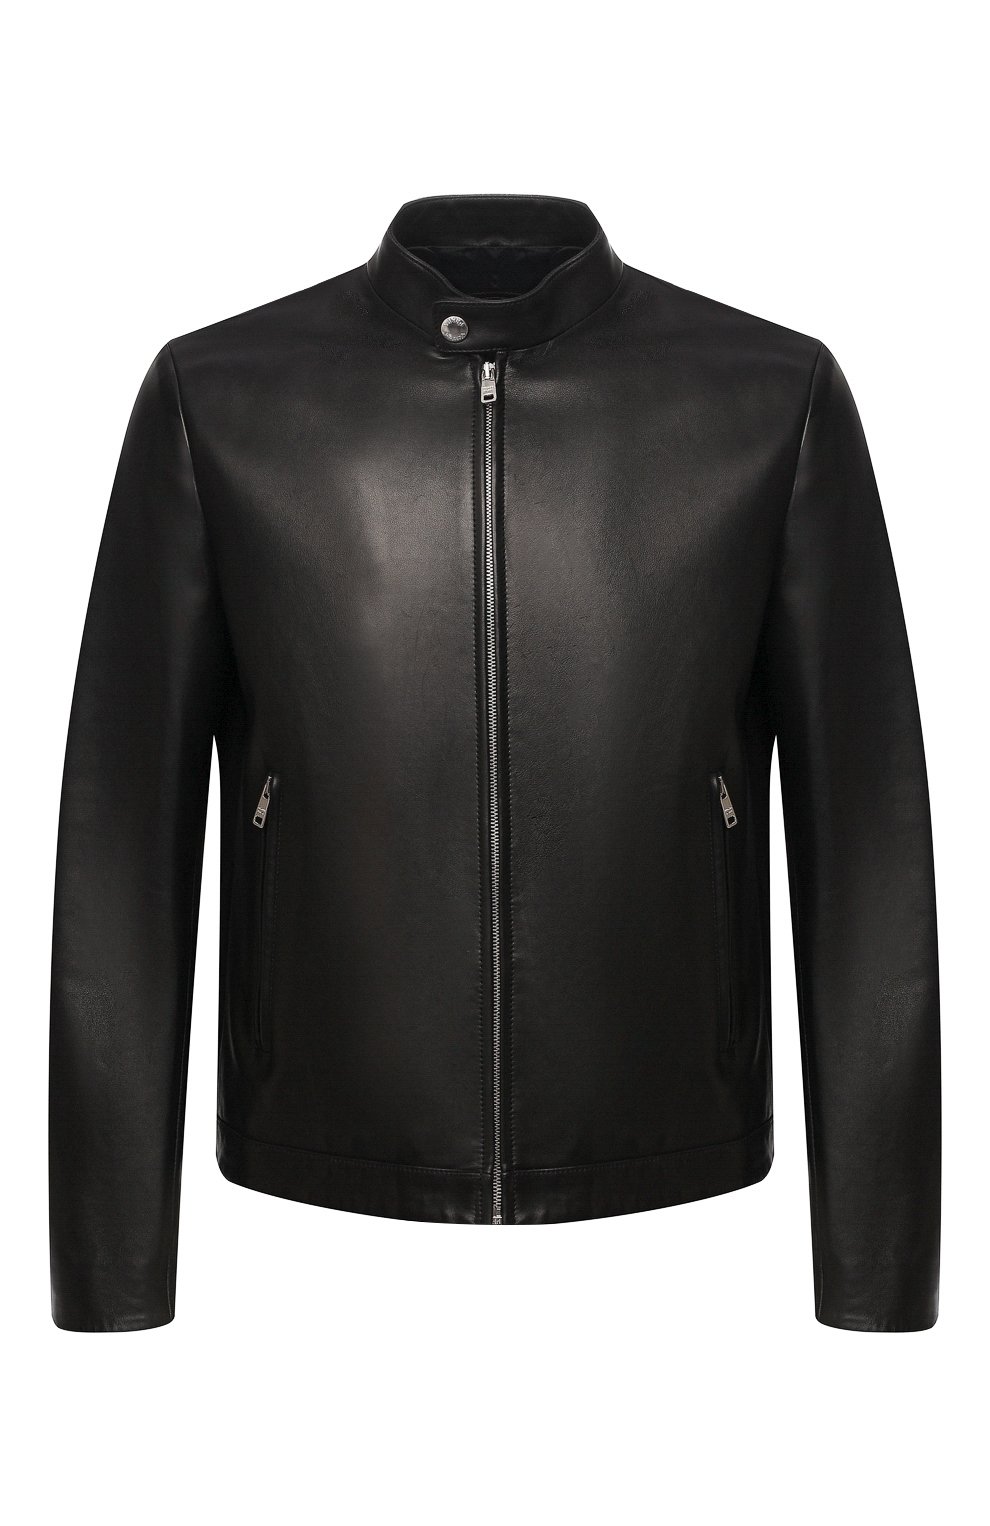 Куртки Prada, Кожаная куртка Prada, Италия, Чёрный, Кожа: 100%;, 11558799  - купить